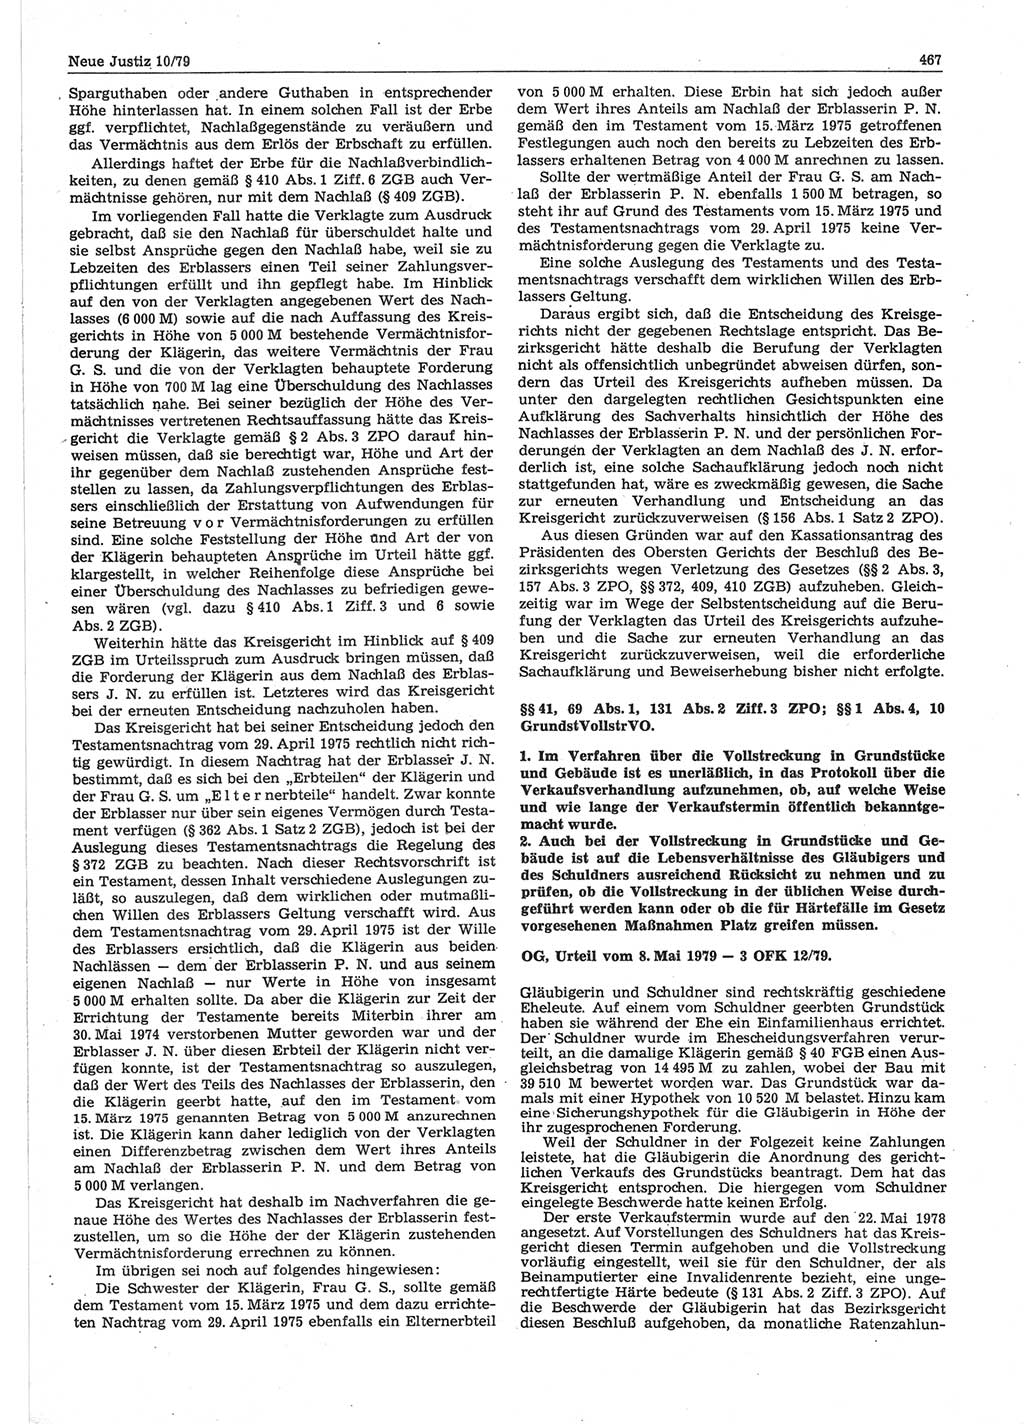 Neue Justiz (NJ), Zeitschrift für sozialistisches Recht und Gesetzlichkeit [Deutsche Demokratische Republik (DDR)], 33. Jahrgang 1979, Seite 467 (NJ DDR 1979, S. 467)